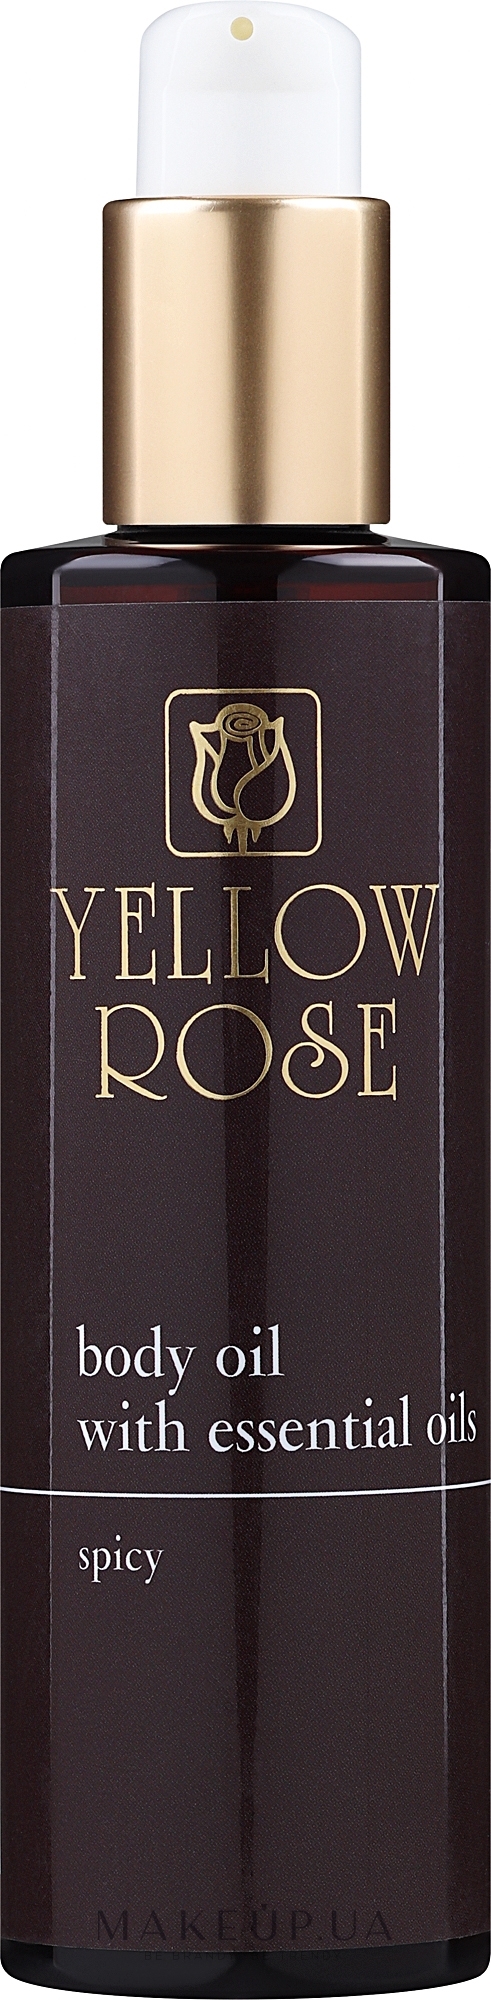 Пом'якшувальна олія для тіла - Yellow Rose Body Oil With Essential Oils Spicy — фото 200ml